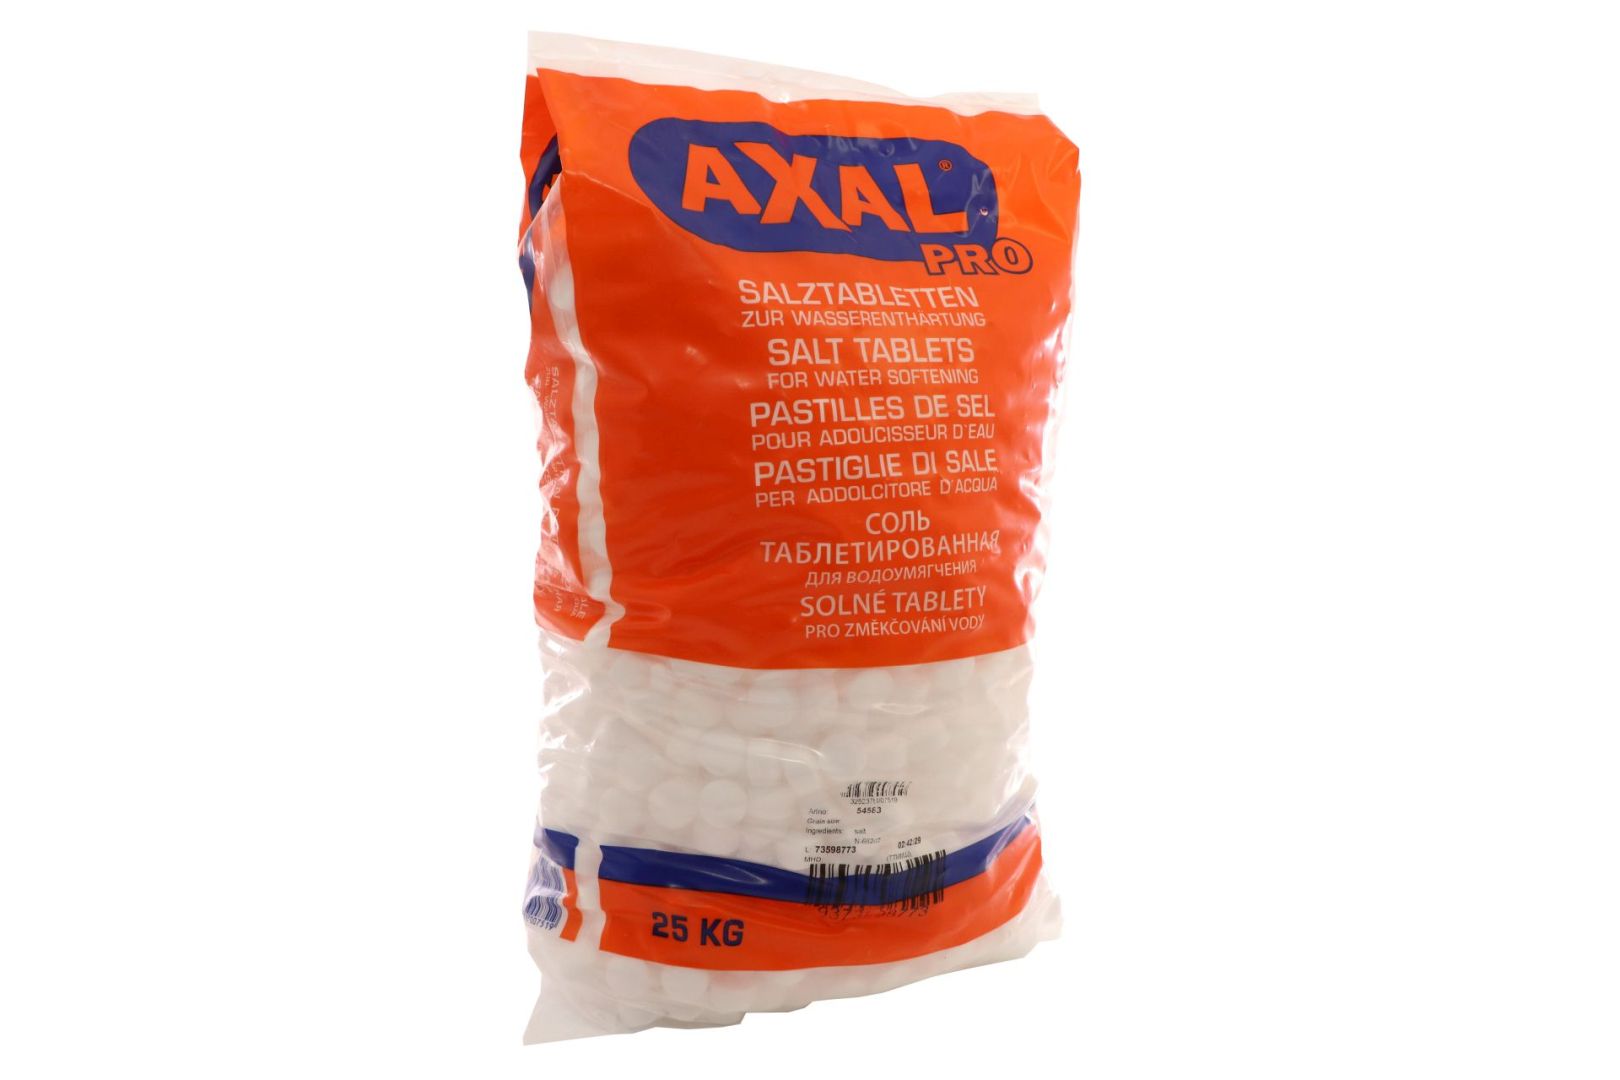 AXAL PRO Regeneriersalz, Salztabletten zur Wasseraufbereitung, 20 x 25 kg auf Palette **Versandkosten PLZ-abhängig**